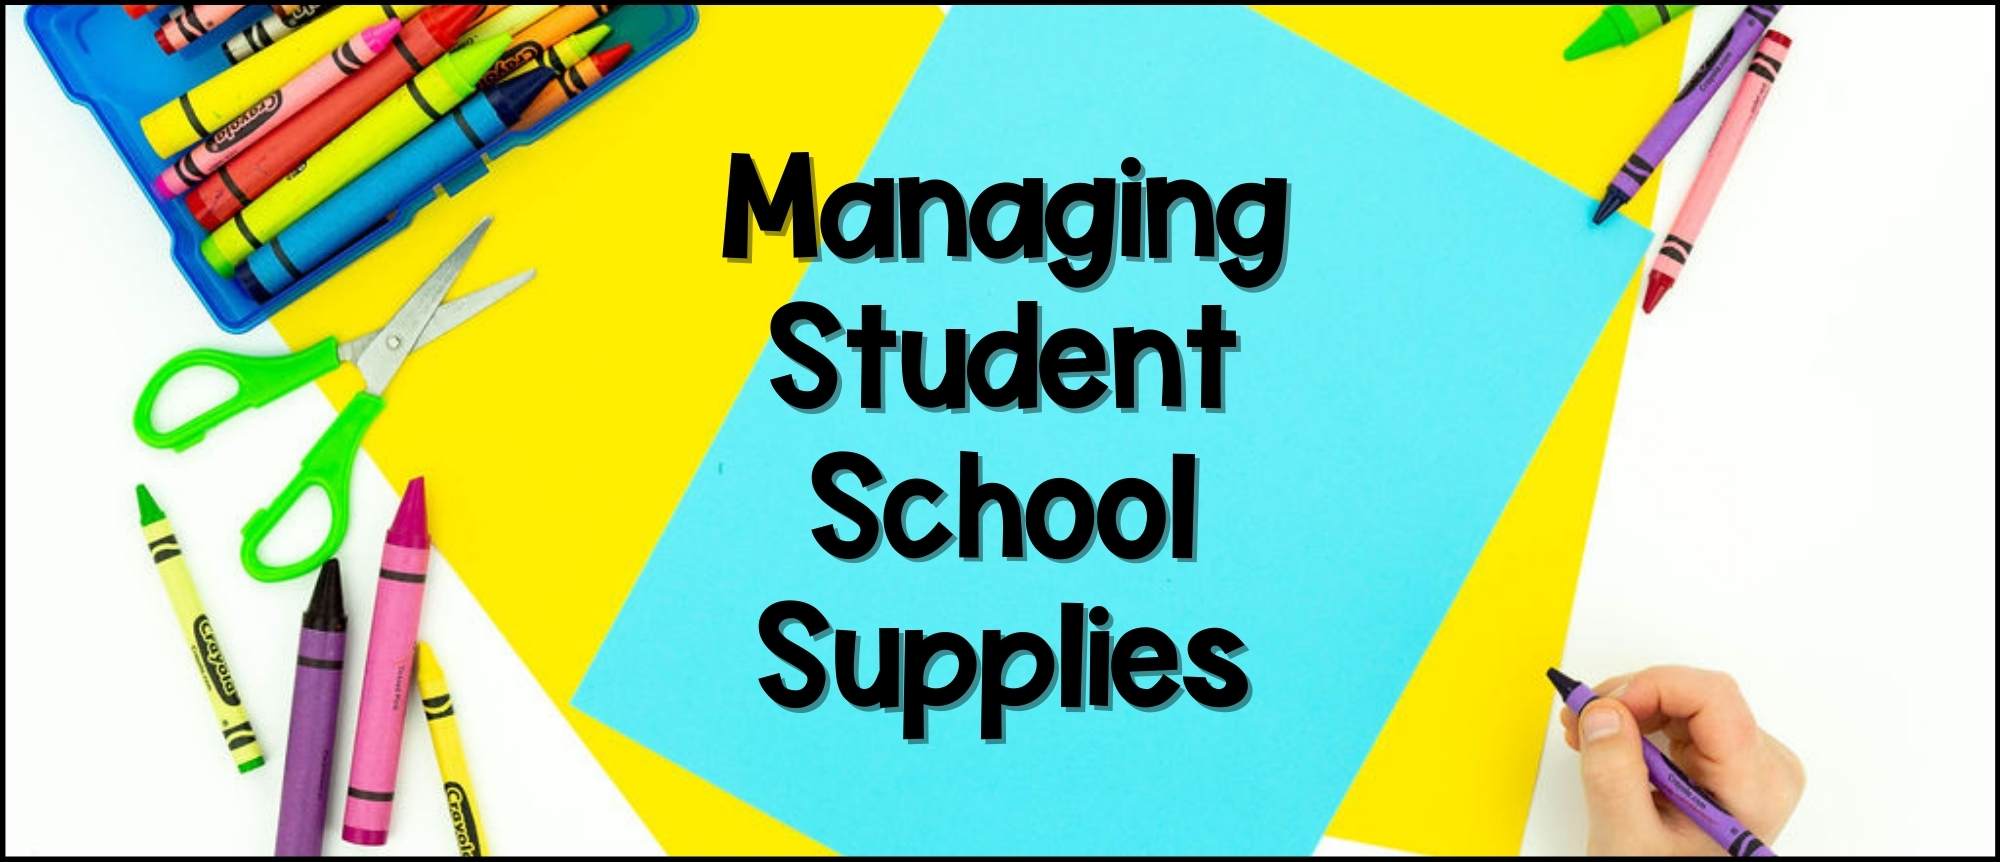 organize and mange school supplies